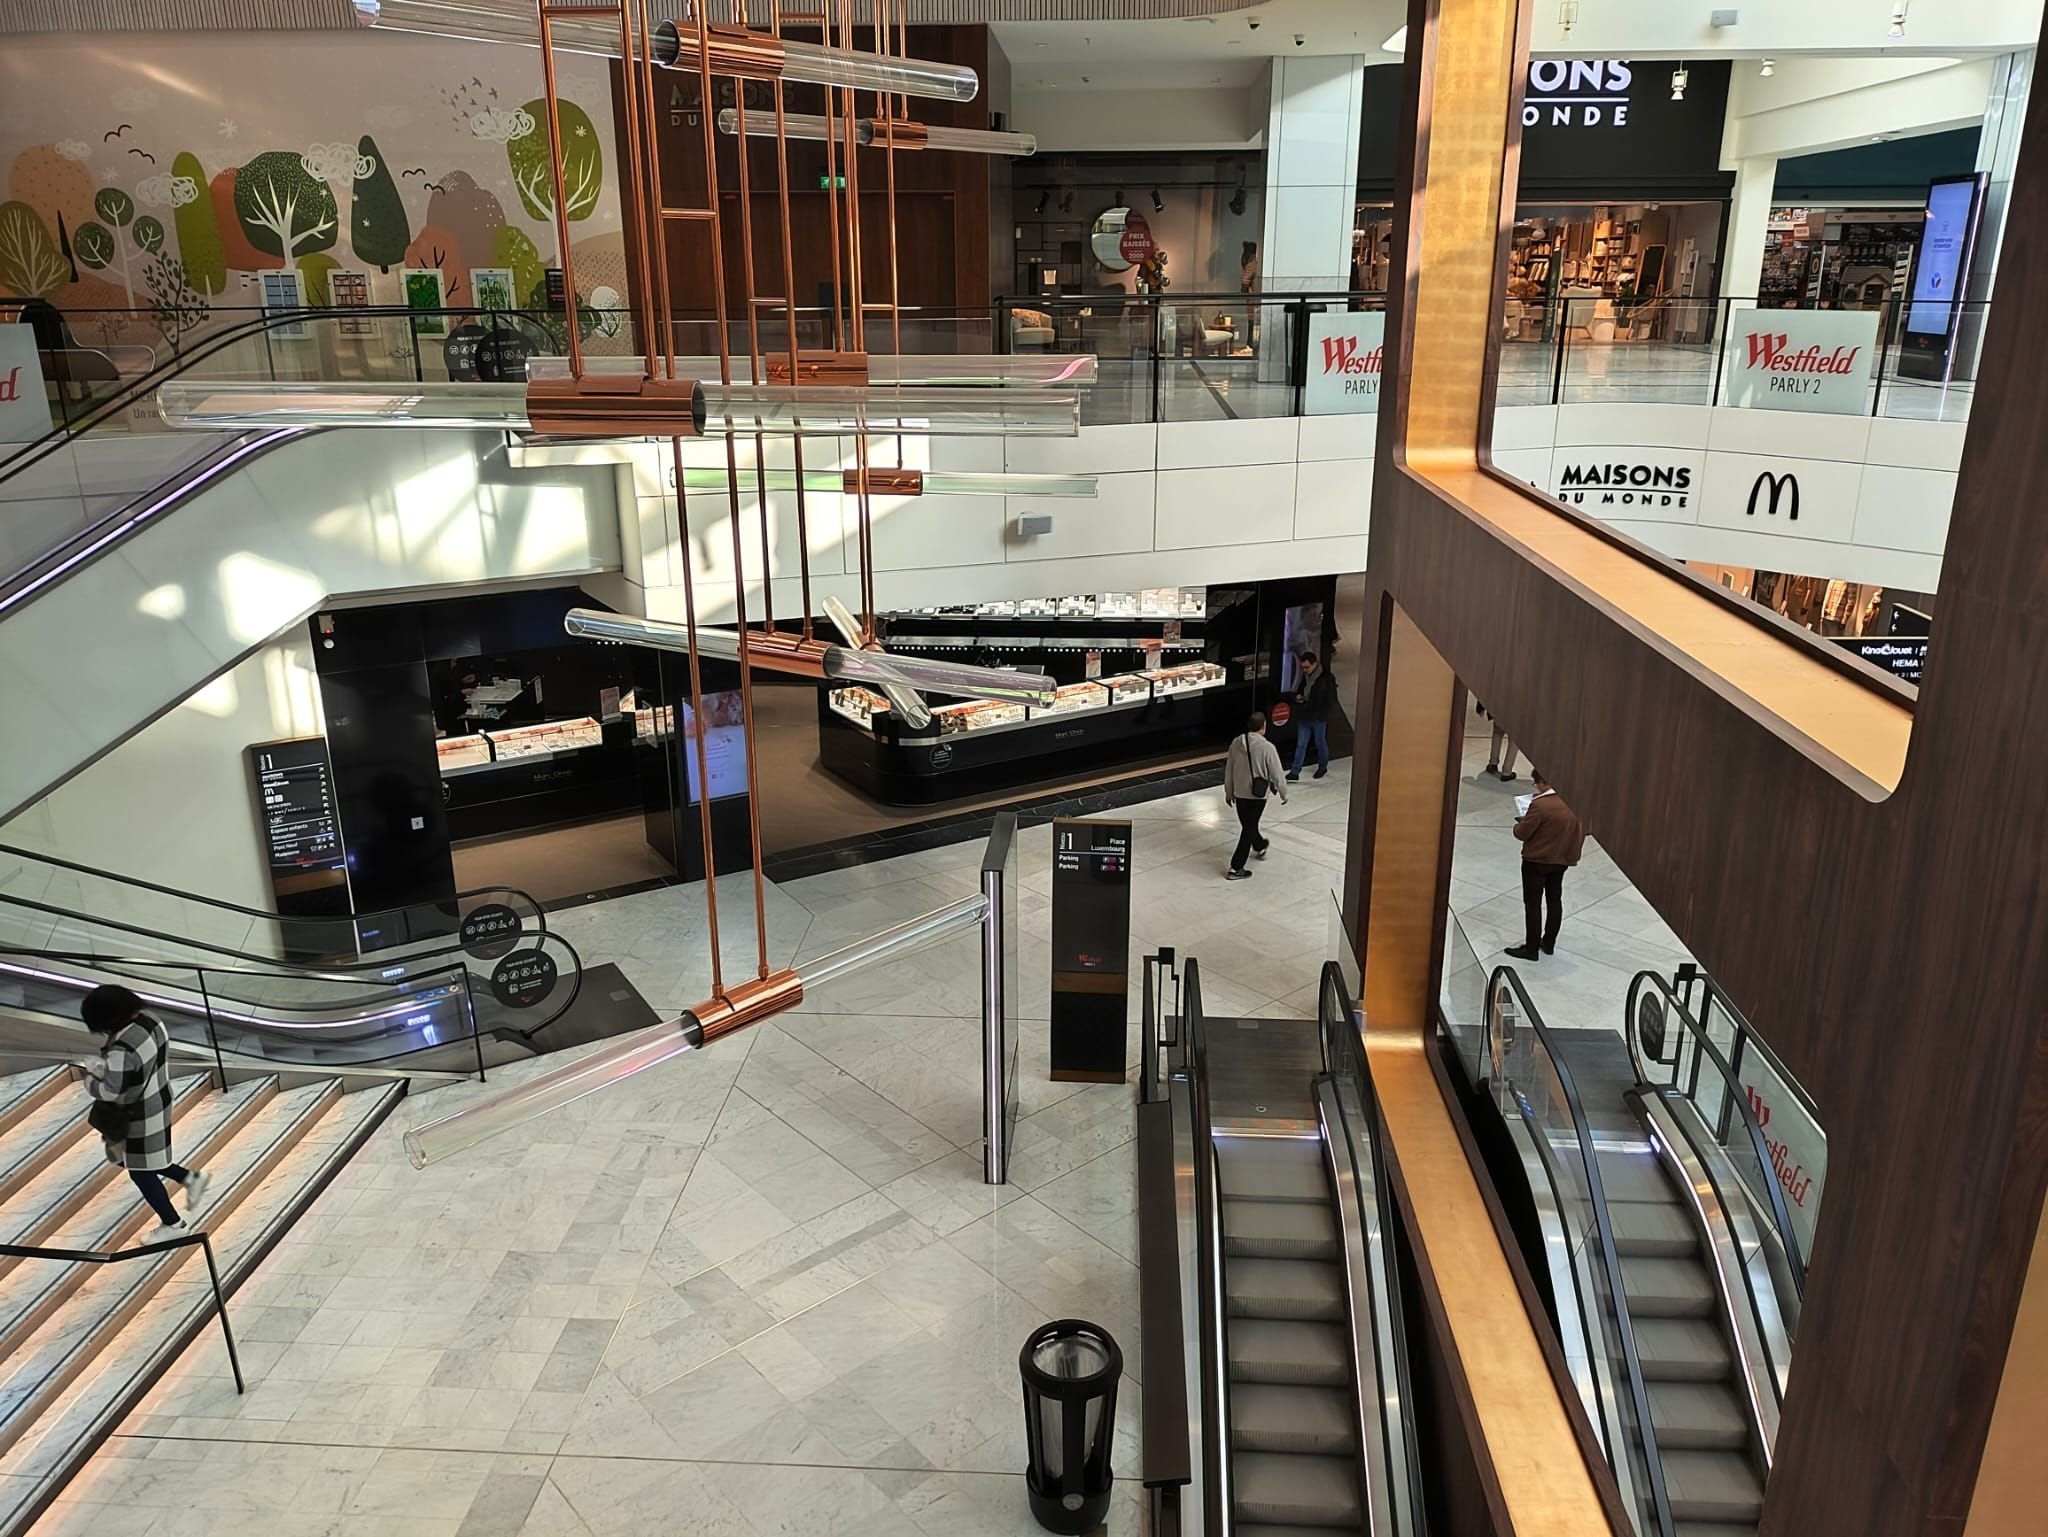 De nombreuses boutiques du centre commercial Parly 2 ont été confrontées toute la journée de vendredi à d'importantes difficultés pour faire fonctionner les terminaux de paiement. LP/M.T.